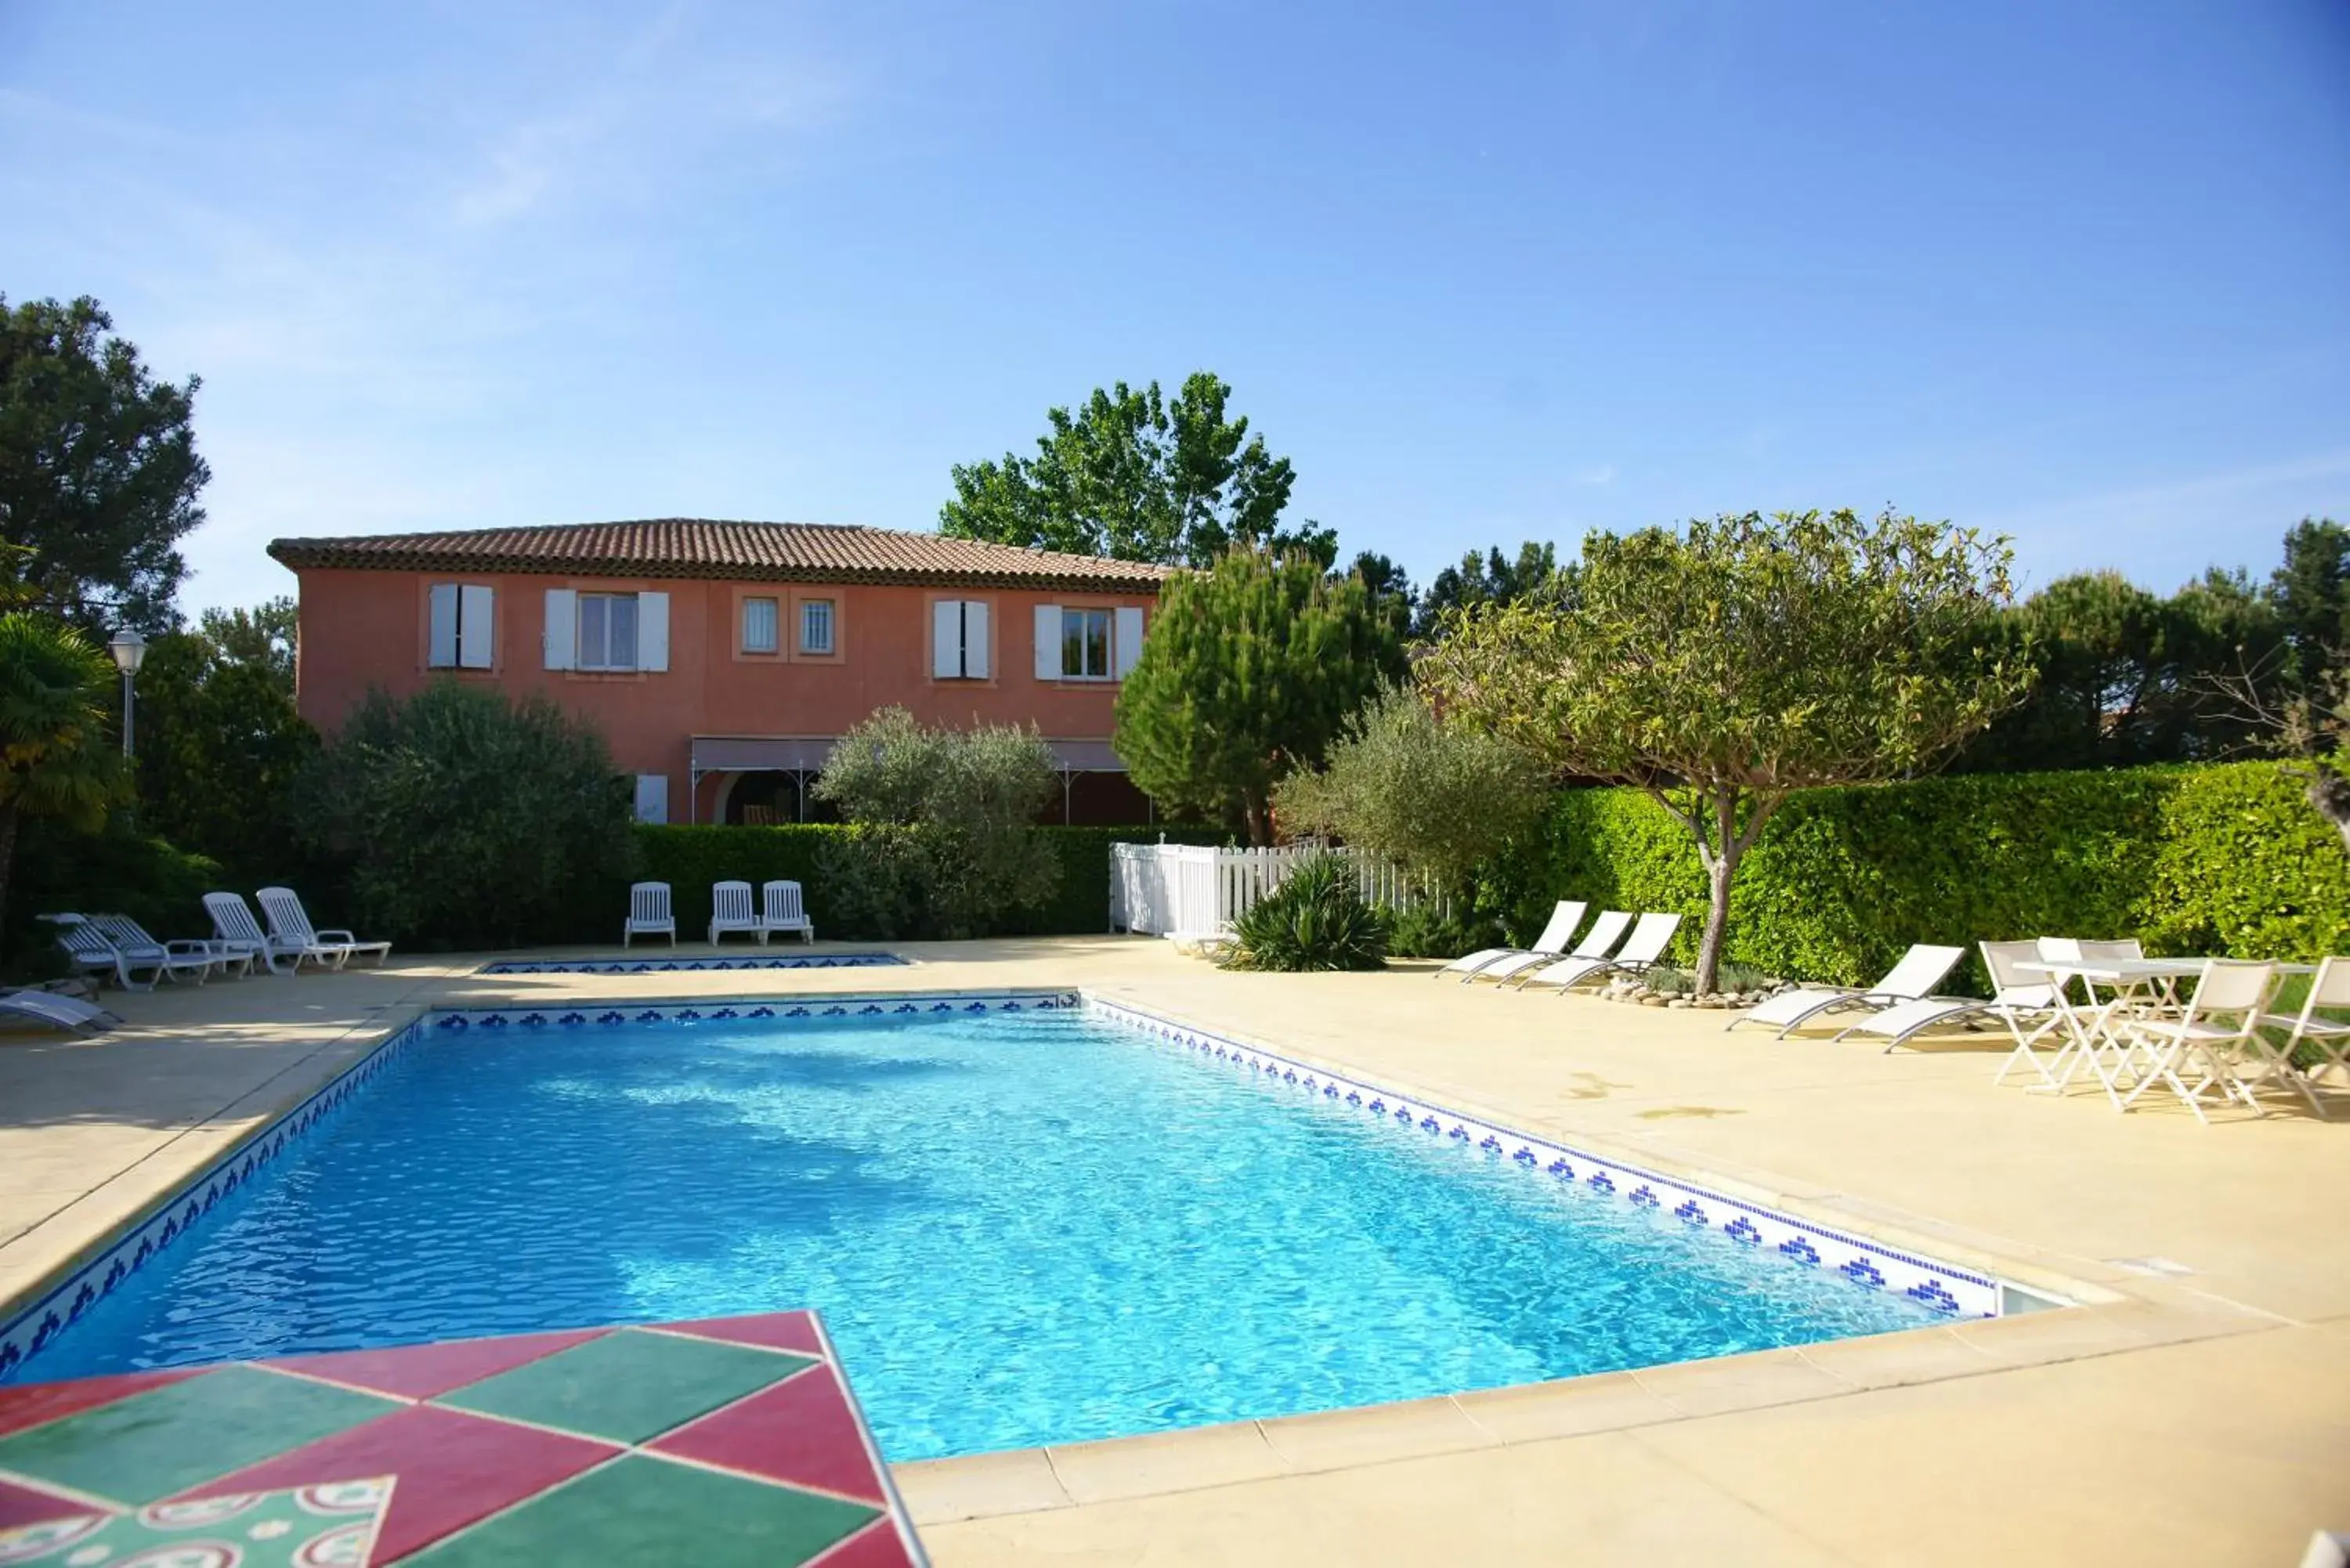 Swimming pool, Property Building in L'etape- Bouc Bel Air - Gardanne- plan de campagne